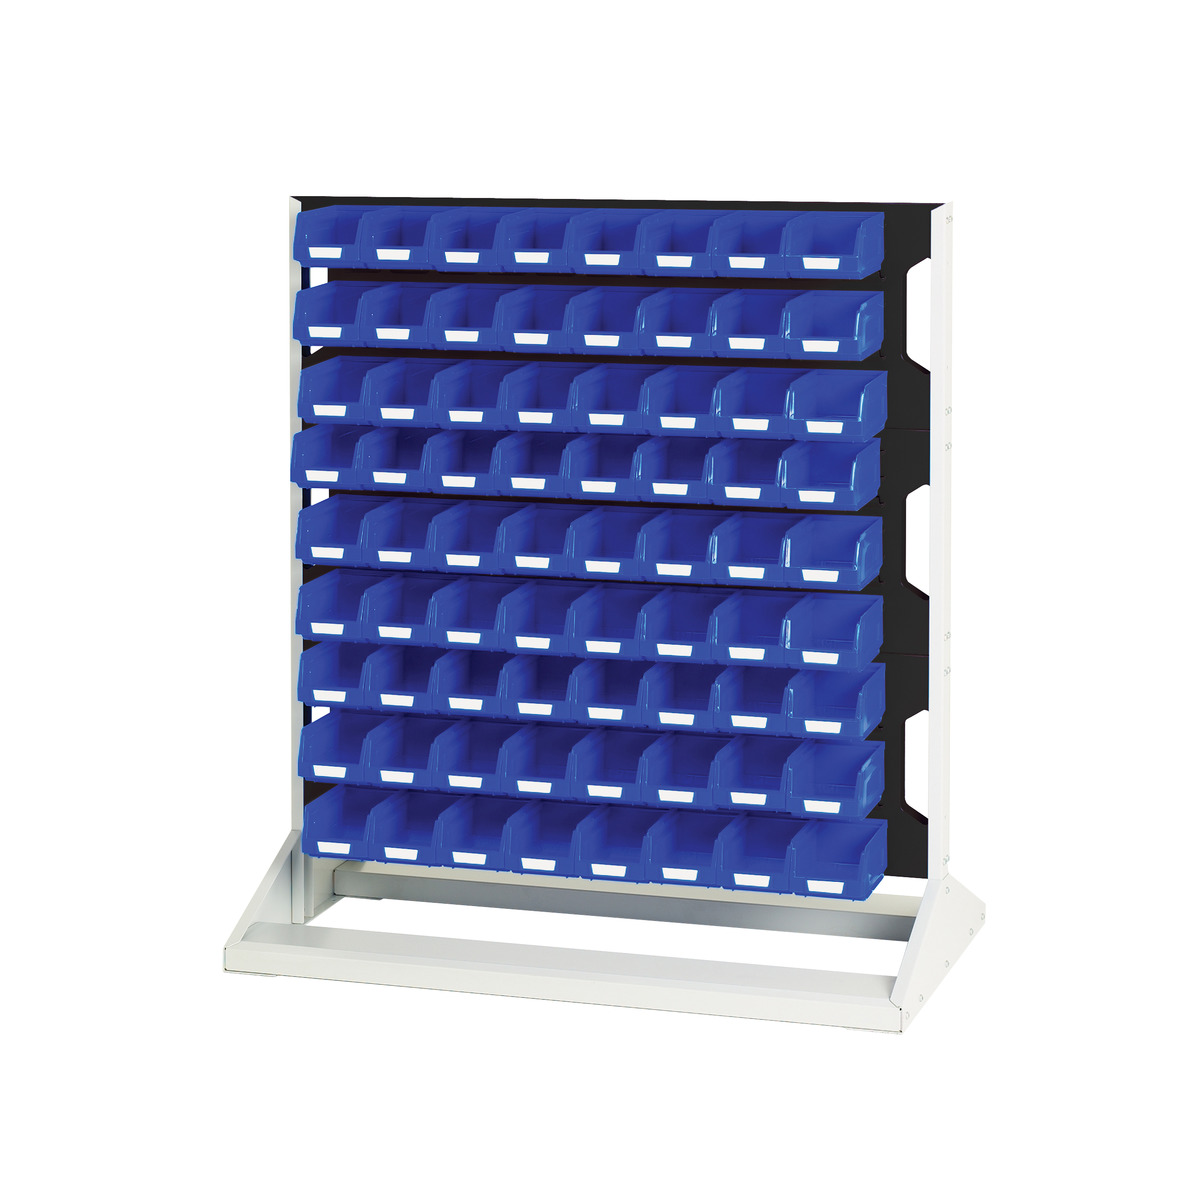 16917228. - Louvre panel rack double sided & bin kit